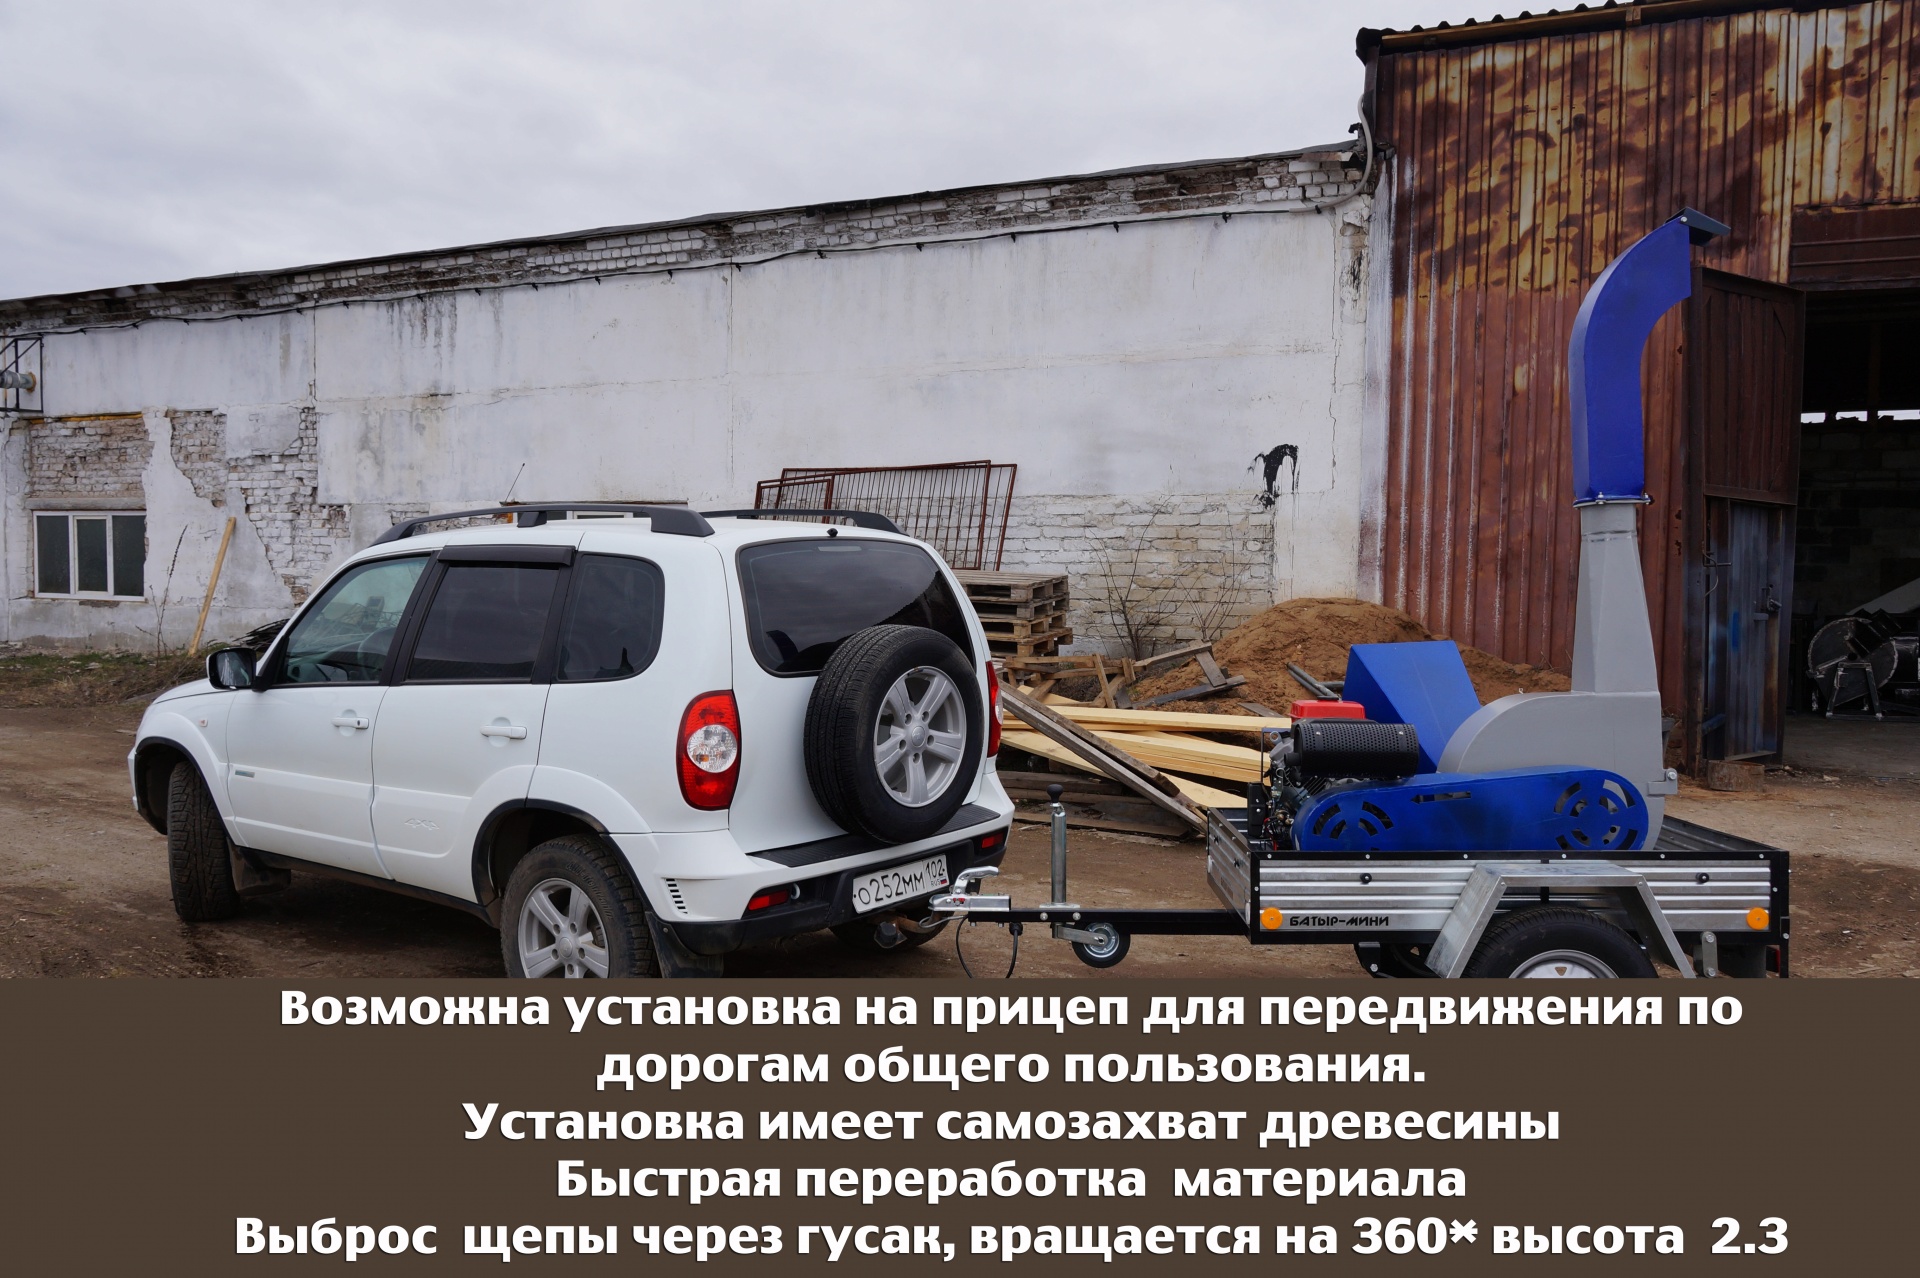 Измельчитель древесины  в Кемерово по цене 265 000 руб. - Биржа .